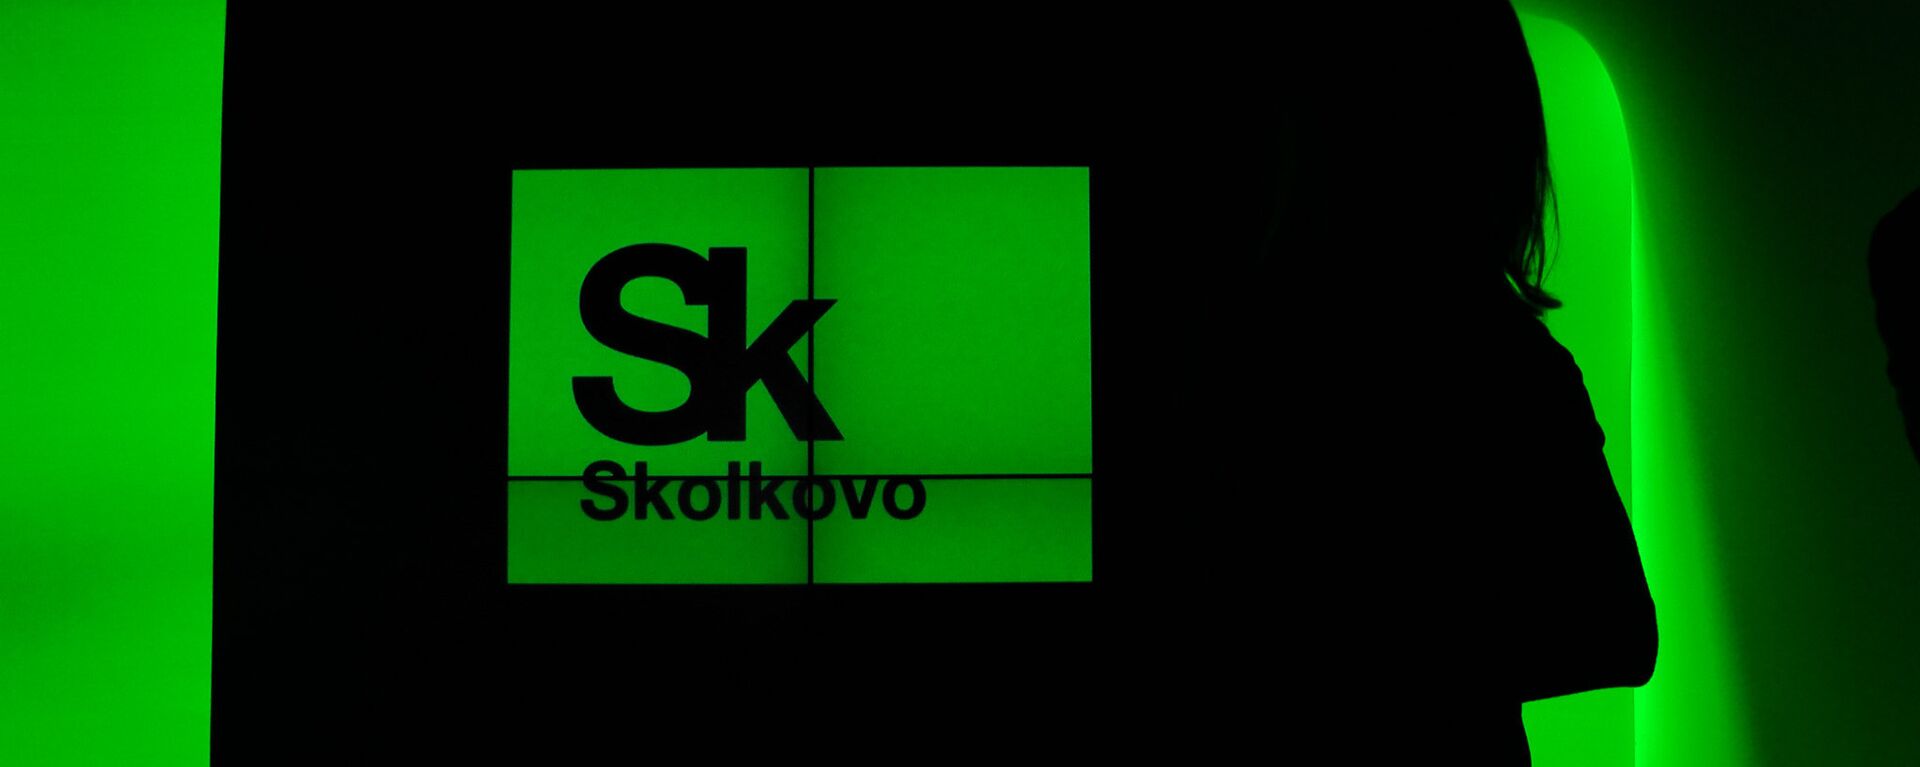 Skolkovo Foundation - Sputnik International, 1920, 21.04.2015